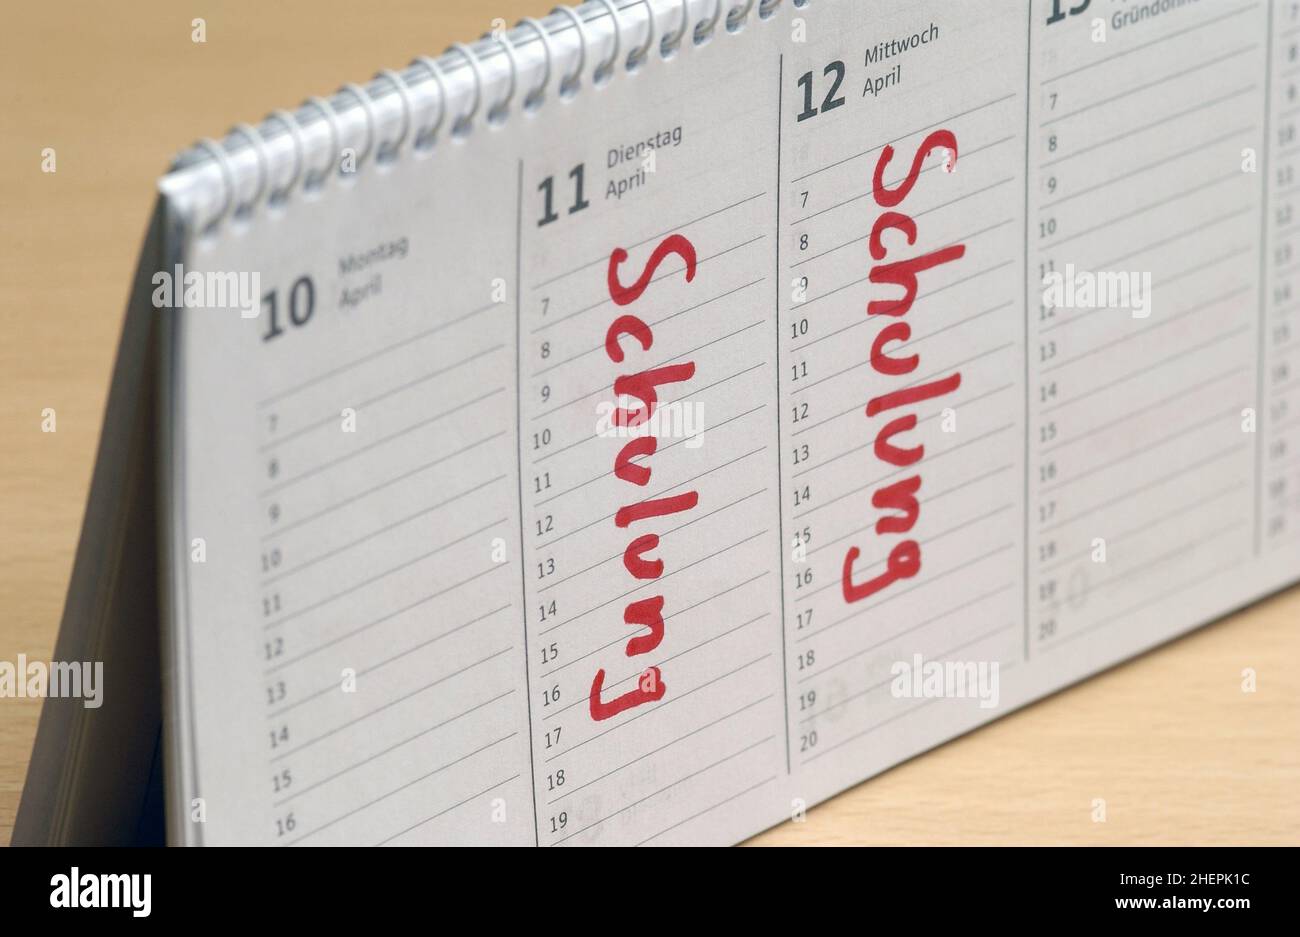 Schulung als Kalendereintrag in einem Tischkalender, Deutschland Stockfoto